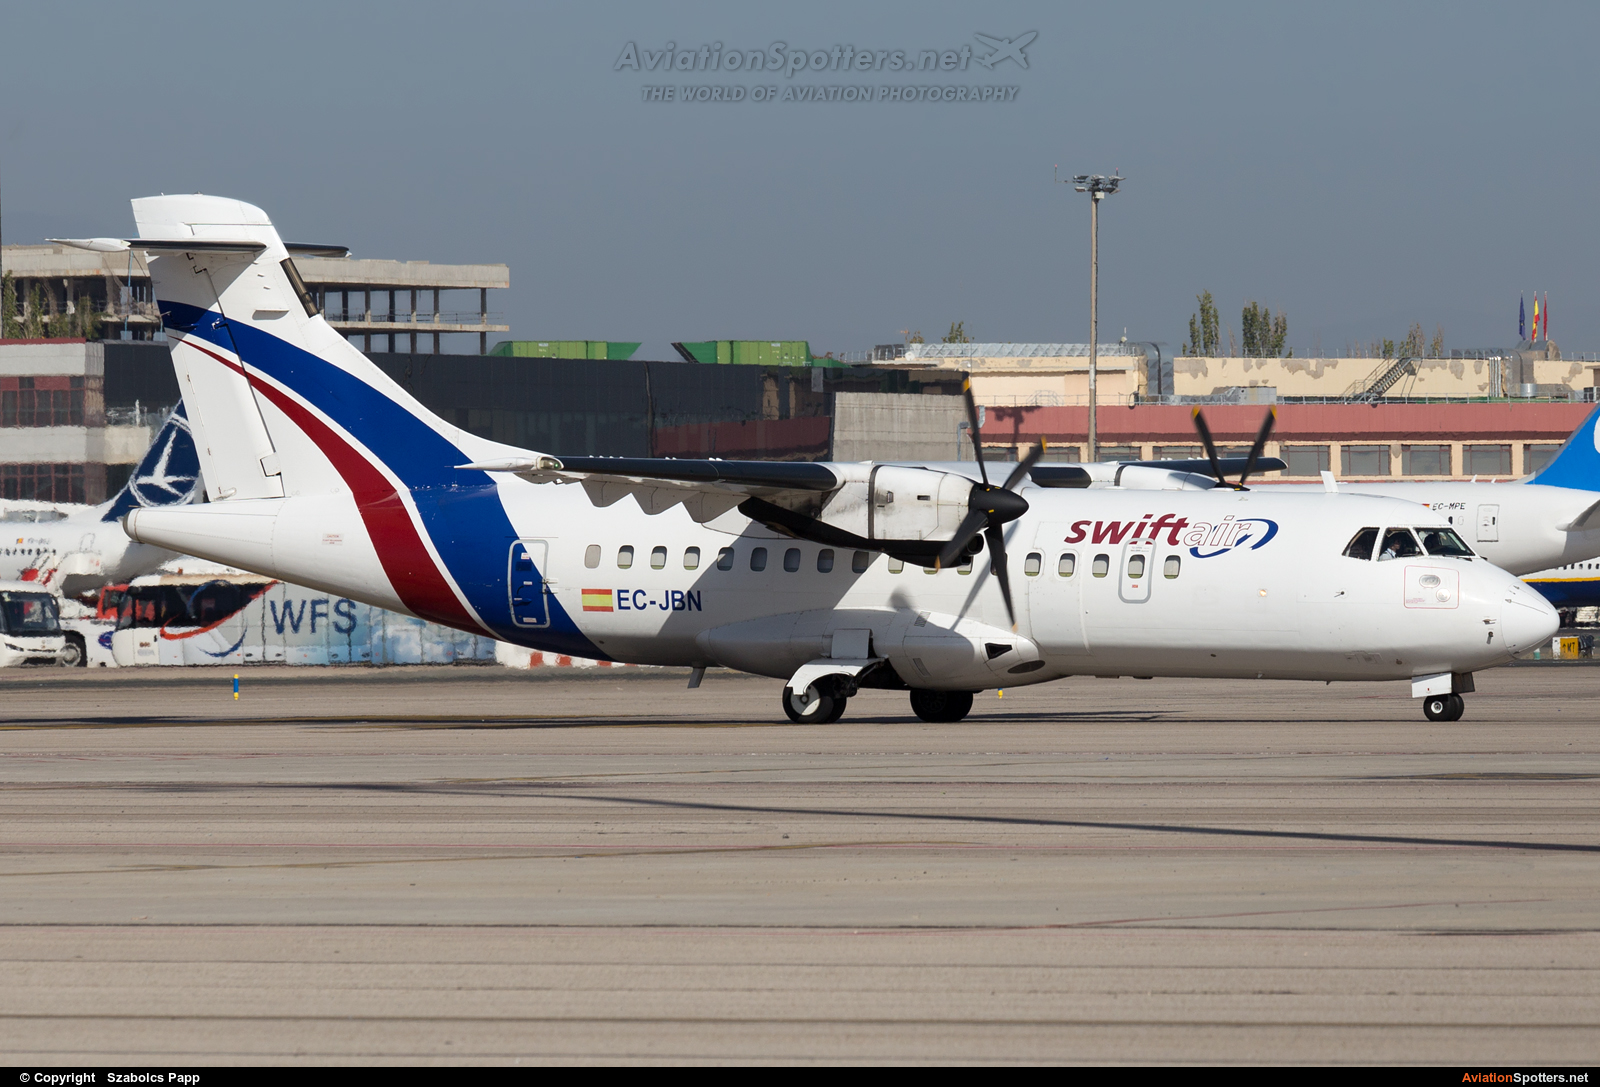 Swiftair  -  42  (EC-JBN) By Szabolcs Papp (mr.szabi)